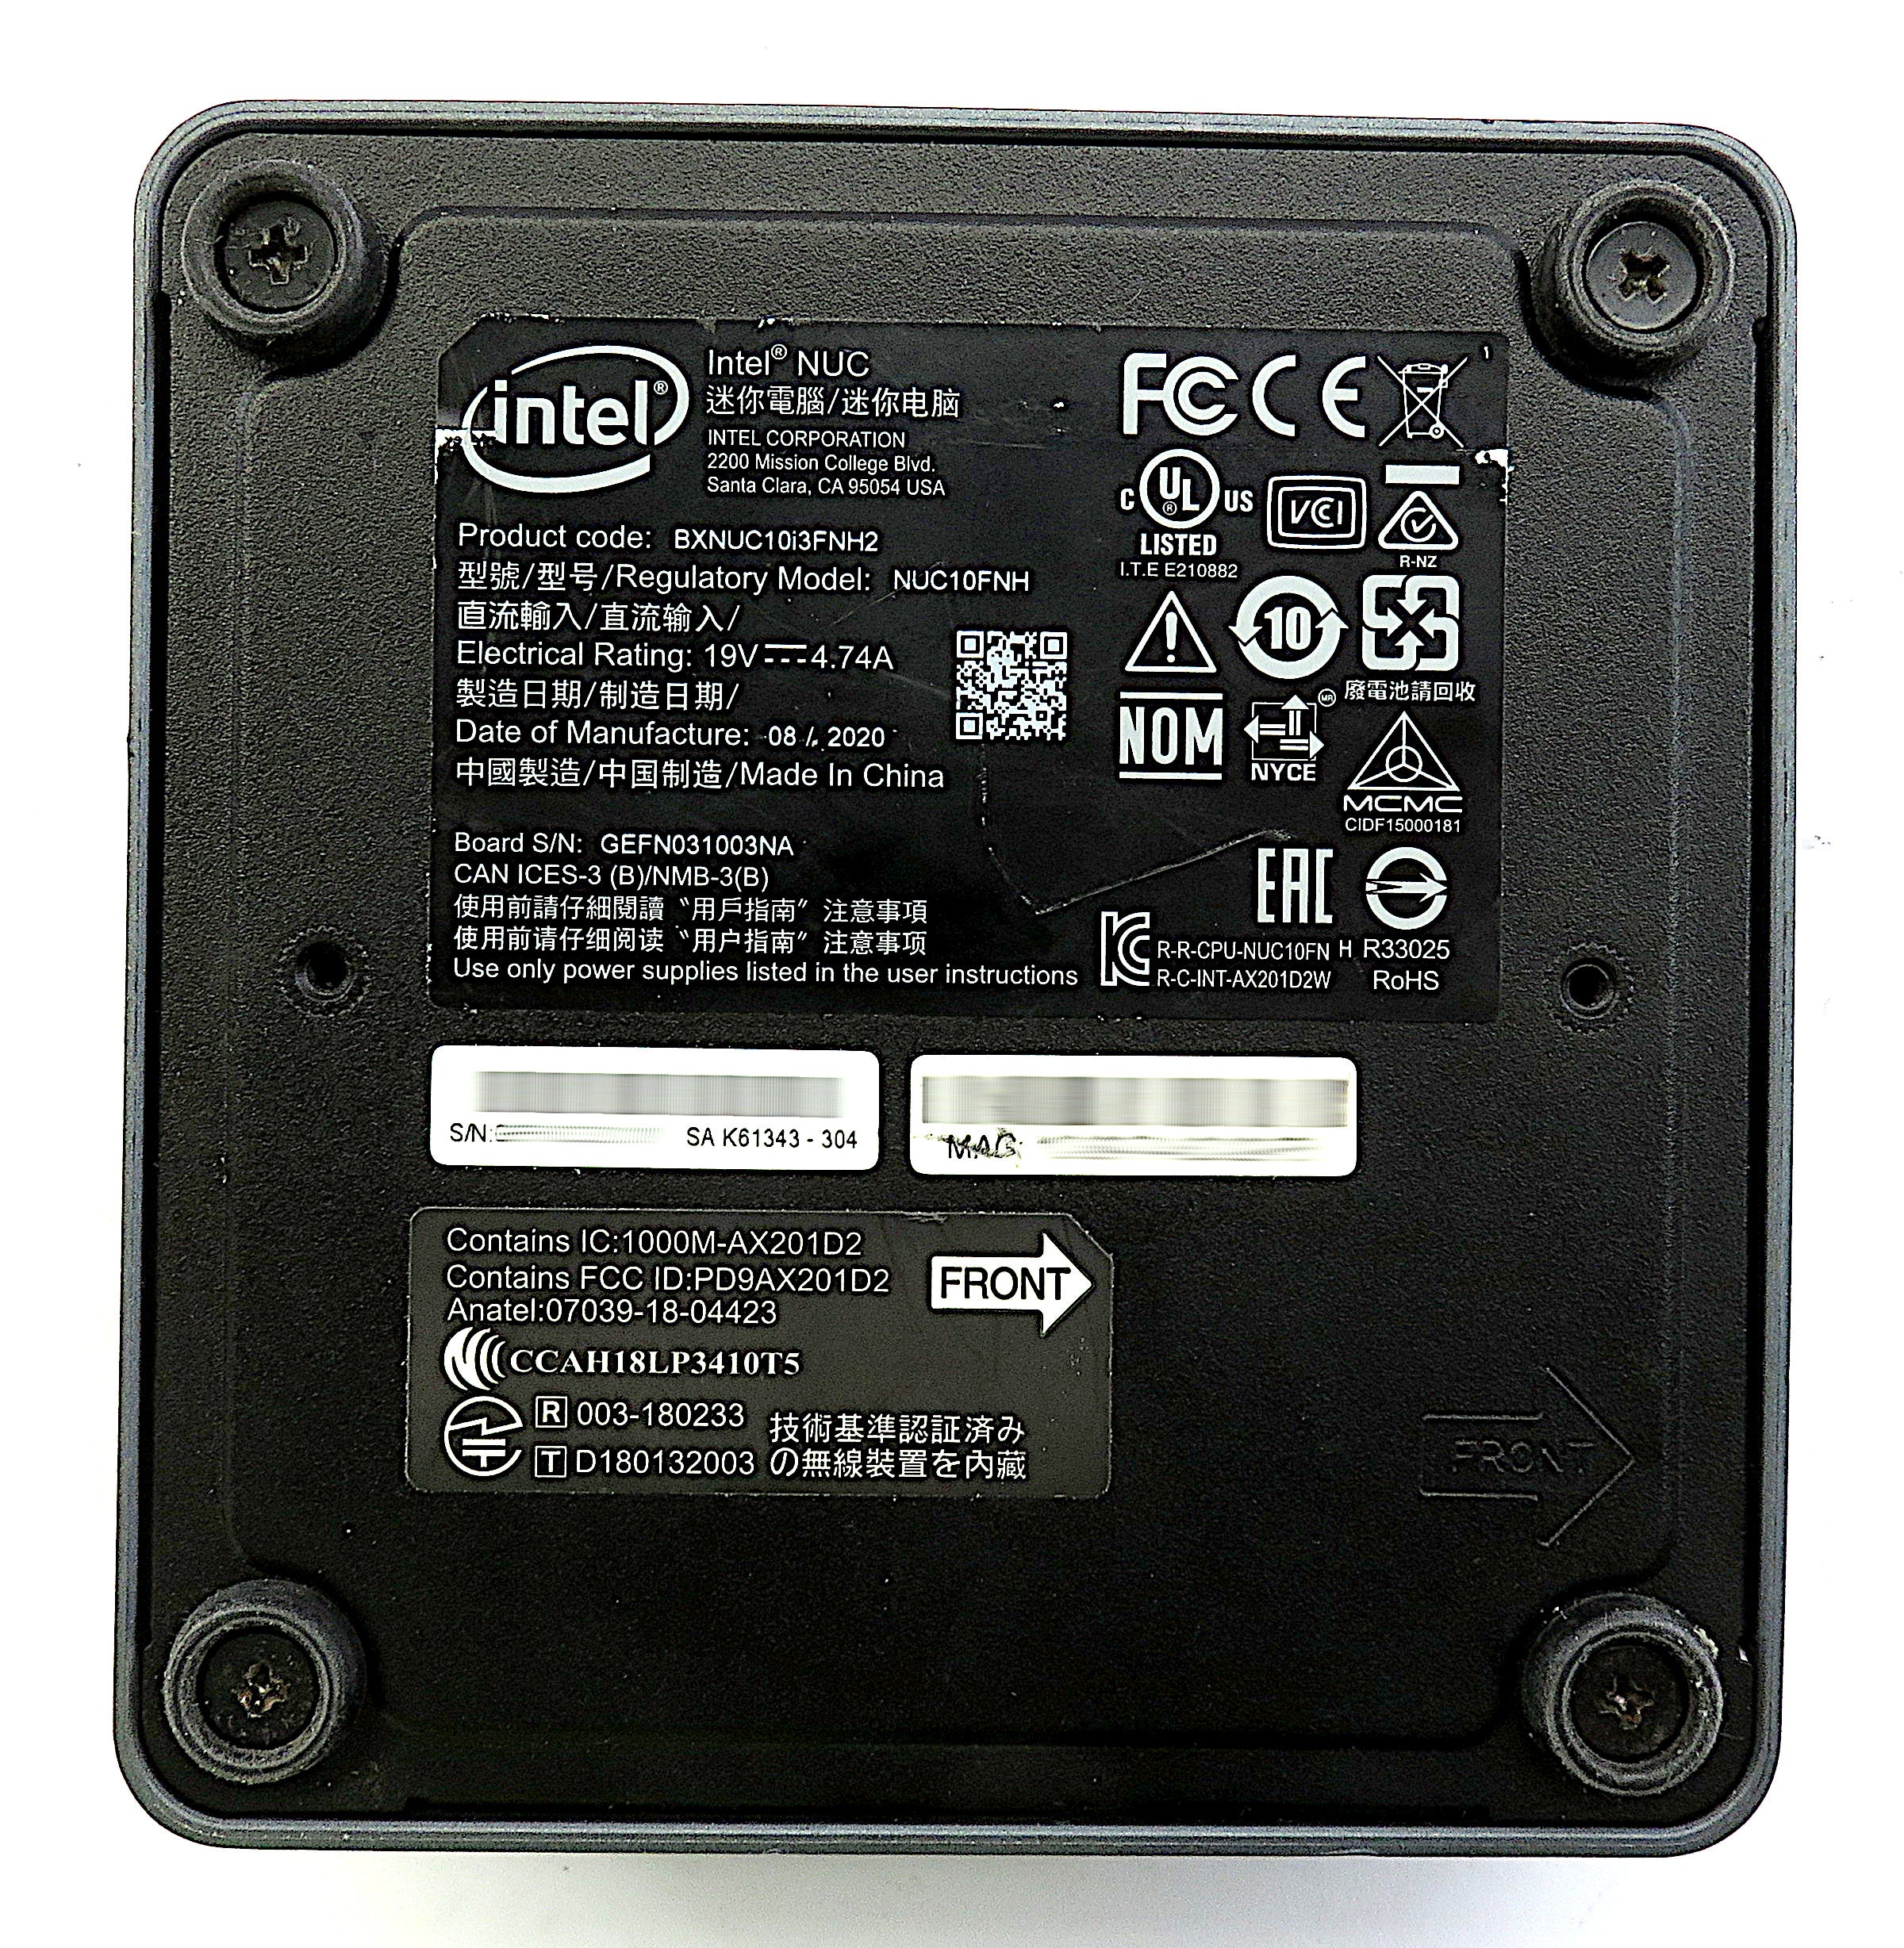 Intel NUC10i3FNH PC, i3-10110U CPU, 16GB RAM, 256GB NVMe, 512GB SSD